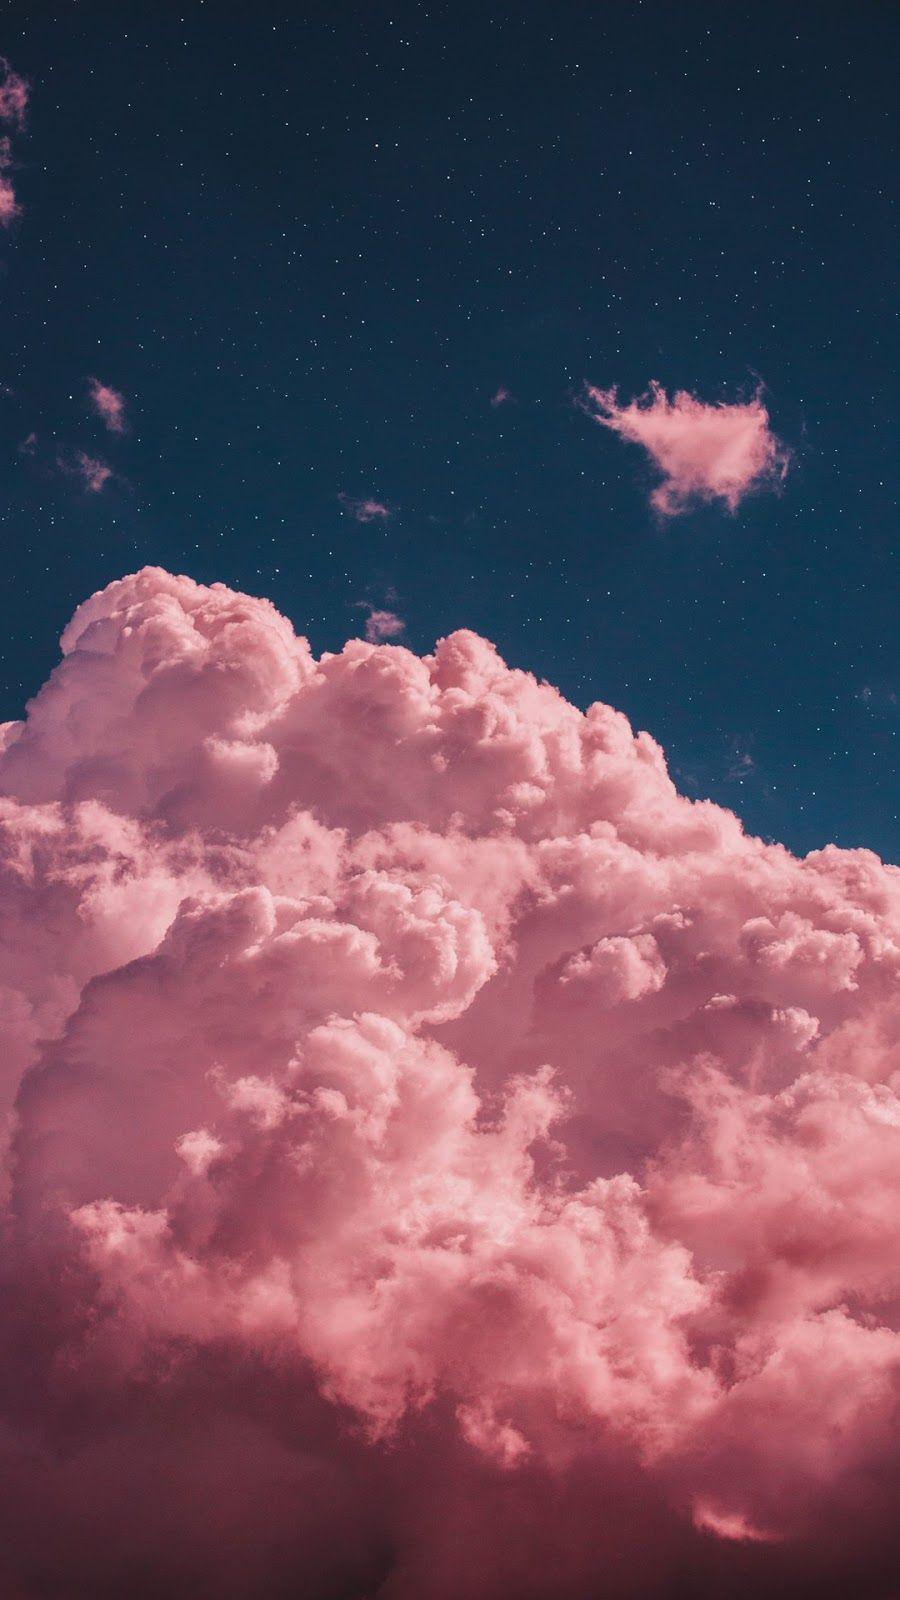 Hình nền mây hồng thẩm mỹ là những hình ảnh đẹp hàng đầu được yêu thích và sử dụng phổ biến trong thiết kế đồ họa. Những khối mây với gam màu hồng nhẹ, tạo nên cảm giác thư giãn, dịu dàng và đầy cảm xúc cho người xem. Bạn sẽ không muốn bỏ lỡ những hình ảnh đẹp này.